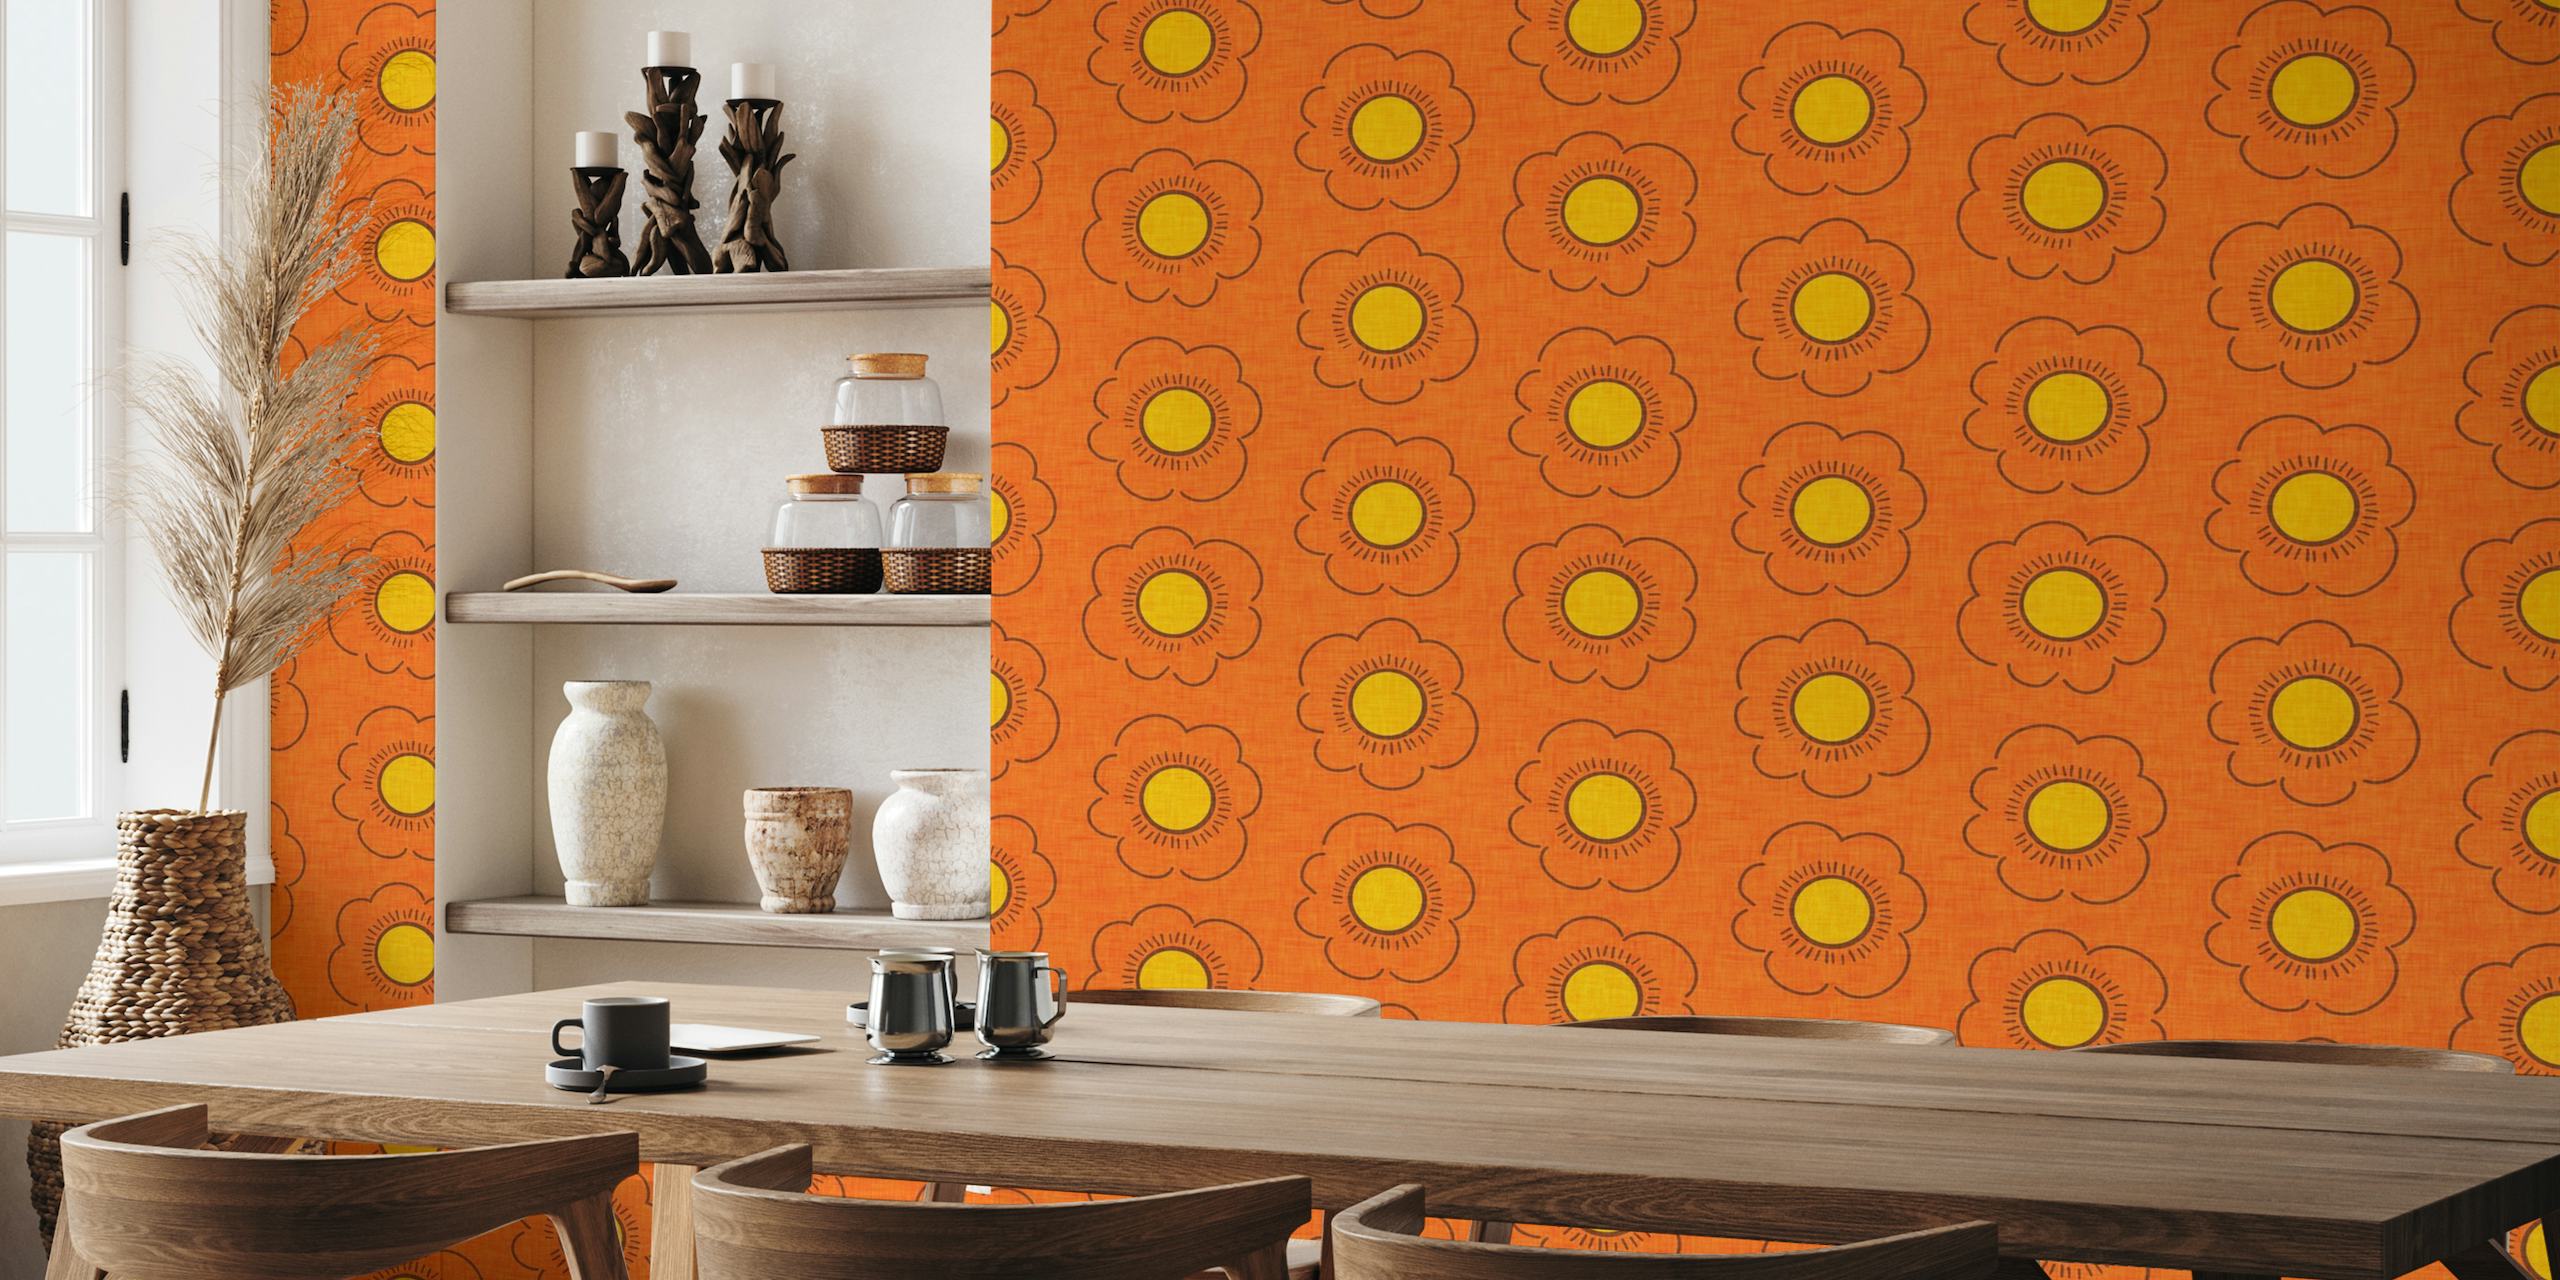 Fotomural vinílico de parede floral laranja inspirado nos anos 70 com design de meados do século